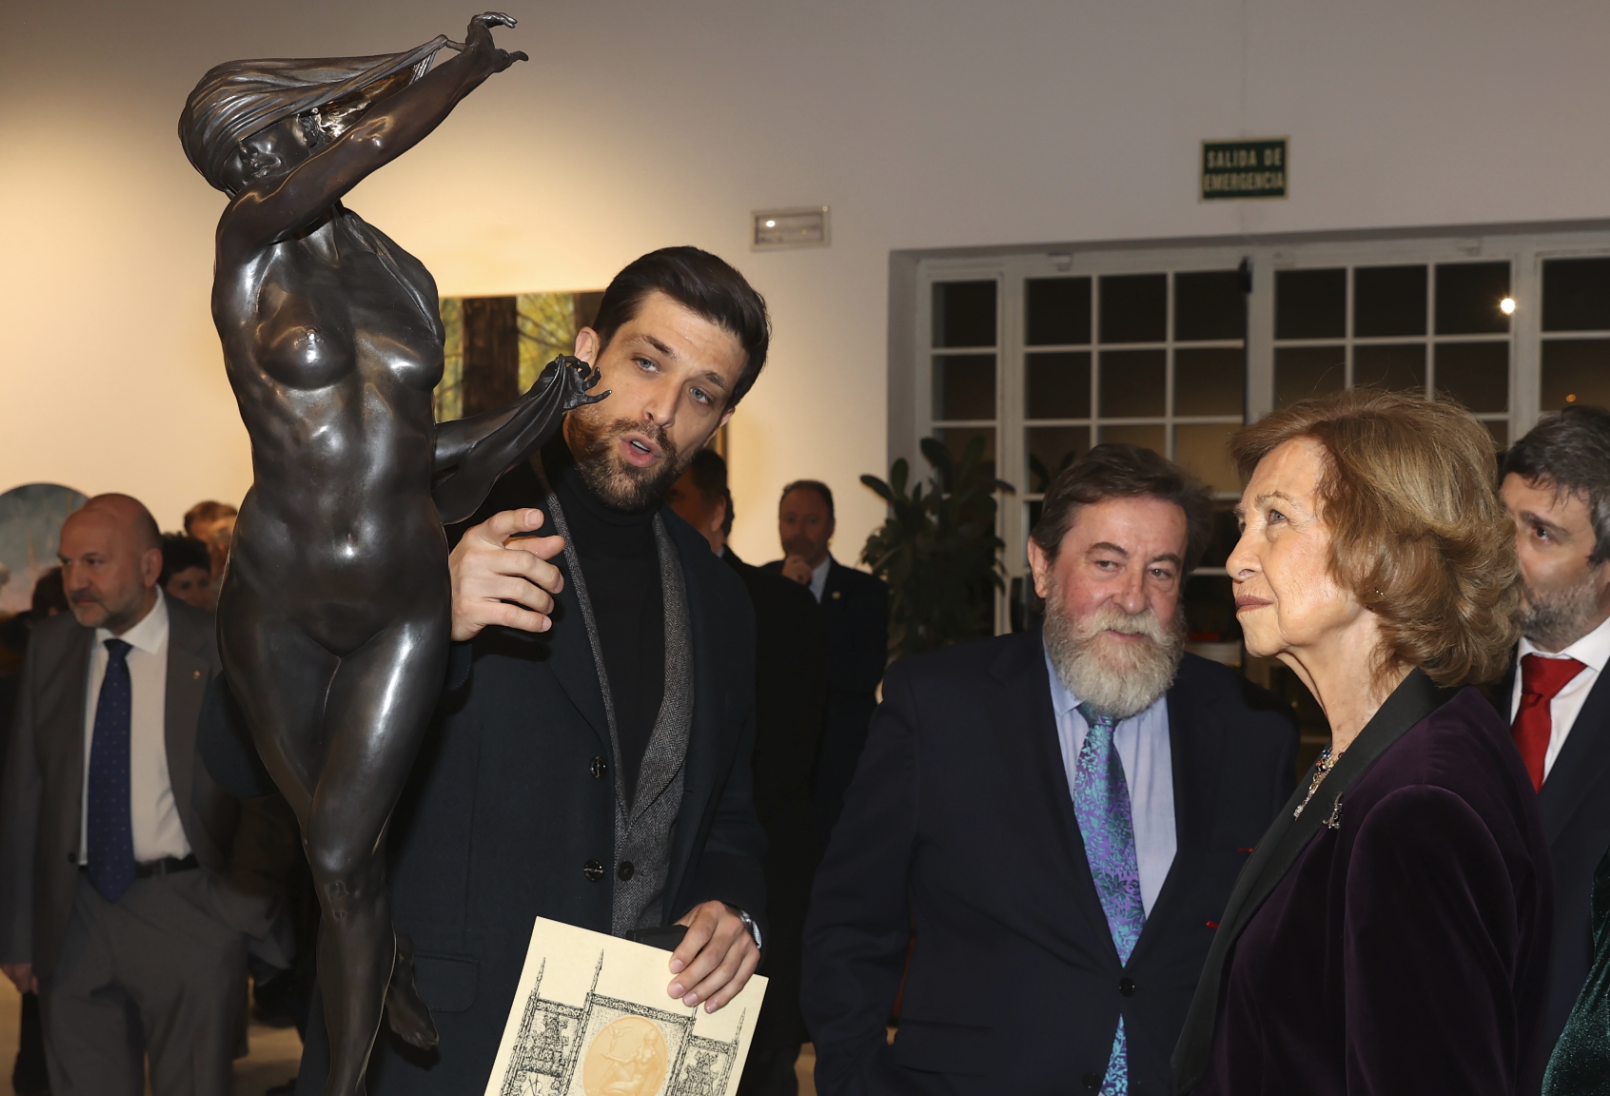 El 58 Premio Reina Sofía de Pintura y Escultura de 
@AEPEMadrid
 ha recaído en la escultura titulada “Noche”, de César Orrico. 

Tras la entrega del premio, la Reina Sofía ha visitado las obras finalistas y ganadora en la exposición de esta edición.